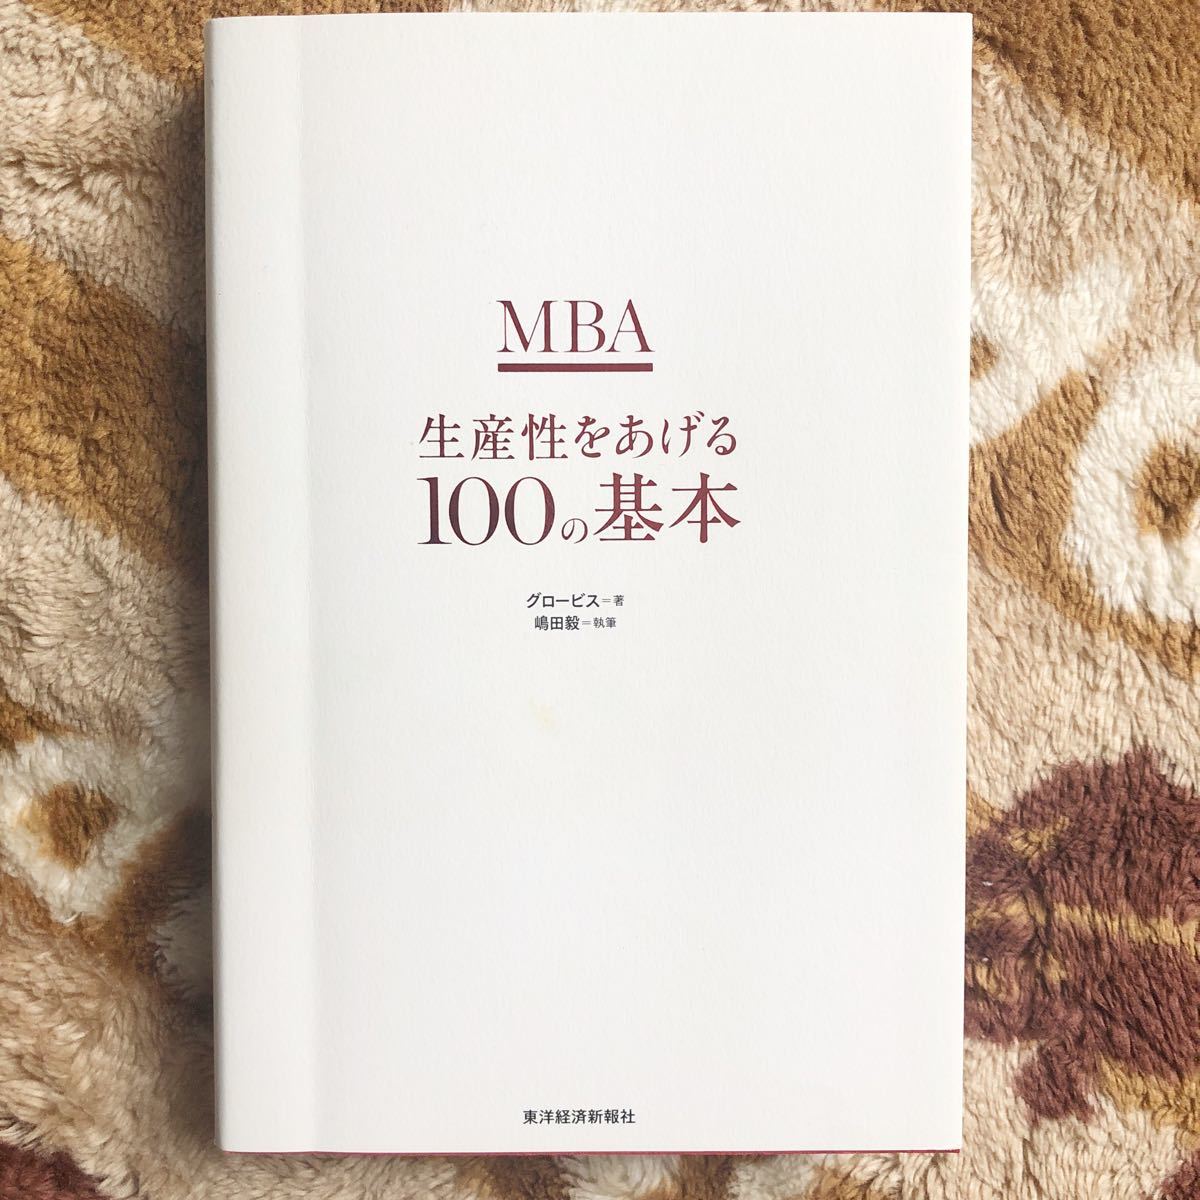 「MBA生産性をあげる100の基本」グロービス / 嶋田毅